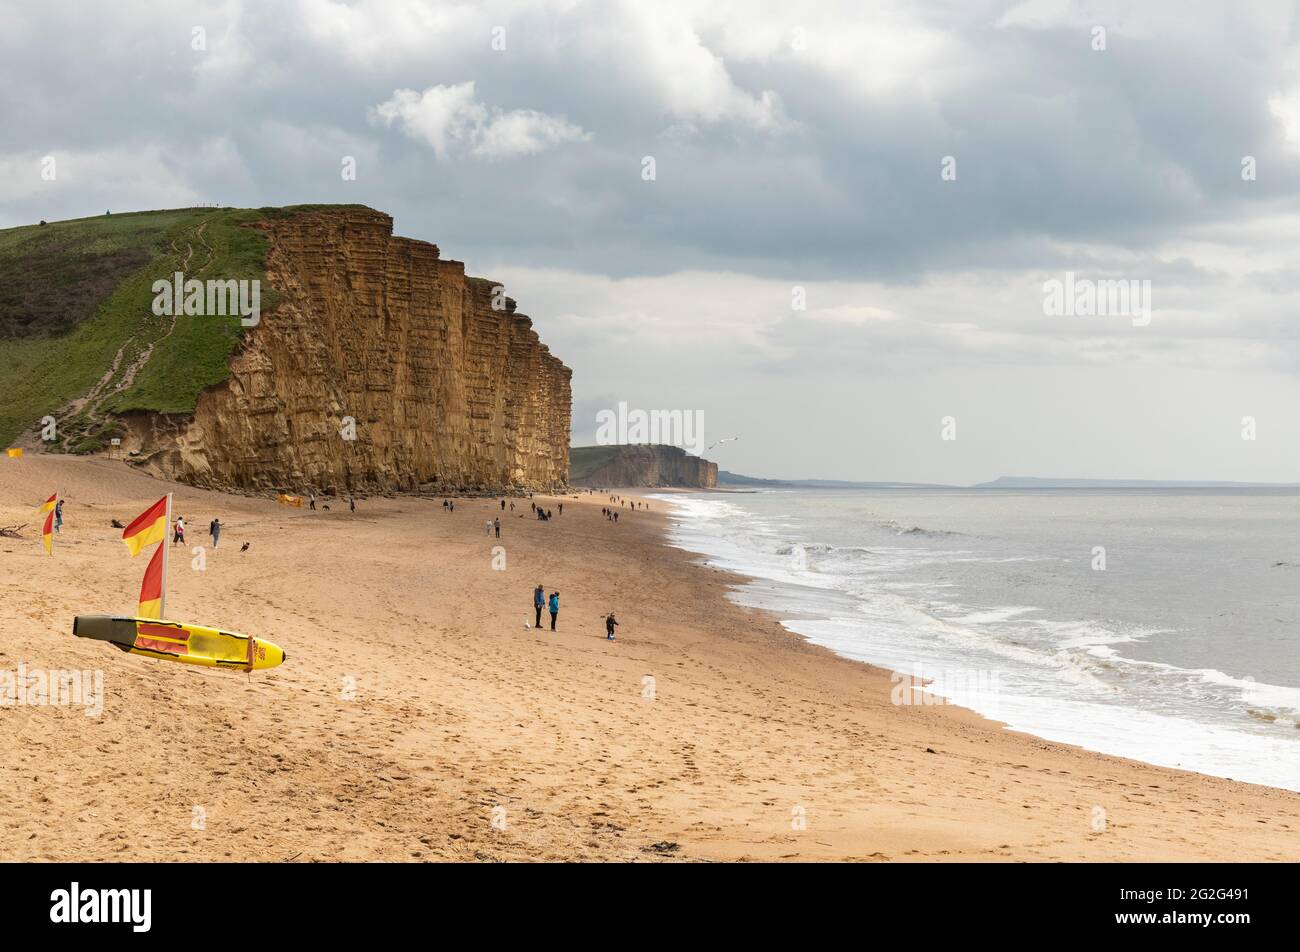 Les falaises de calcaire et la plage pittoresque d'East Beach, West Bay, Dorset, Angleterre, Royaume-Uni Banque D'Images